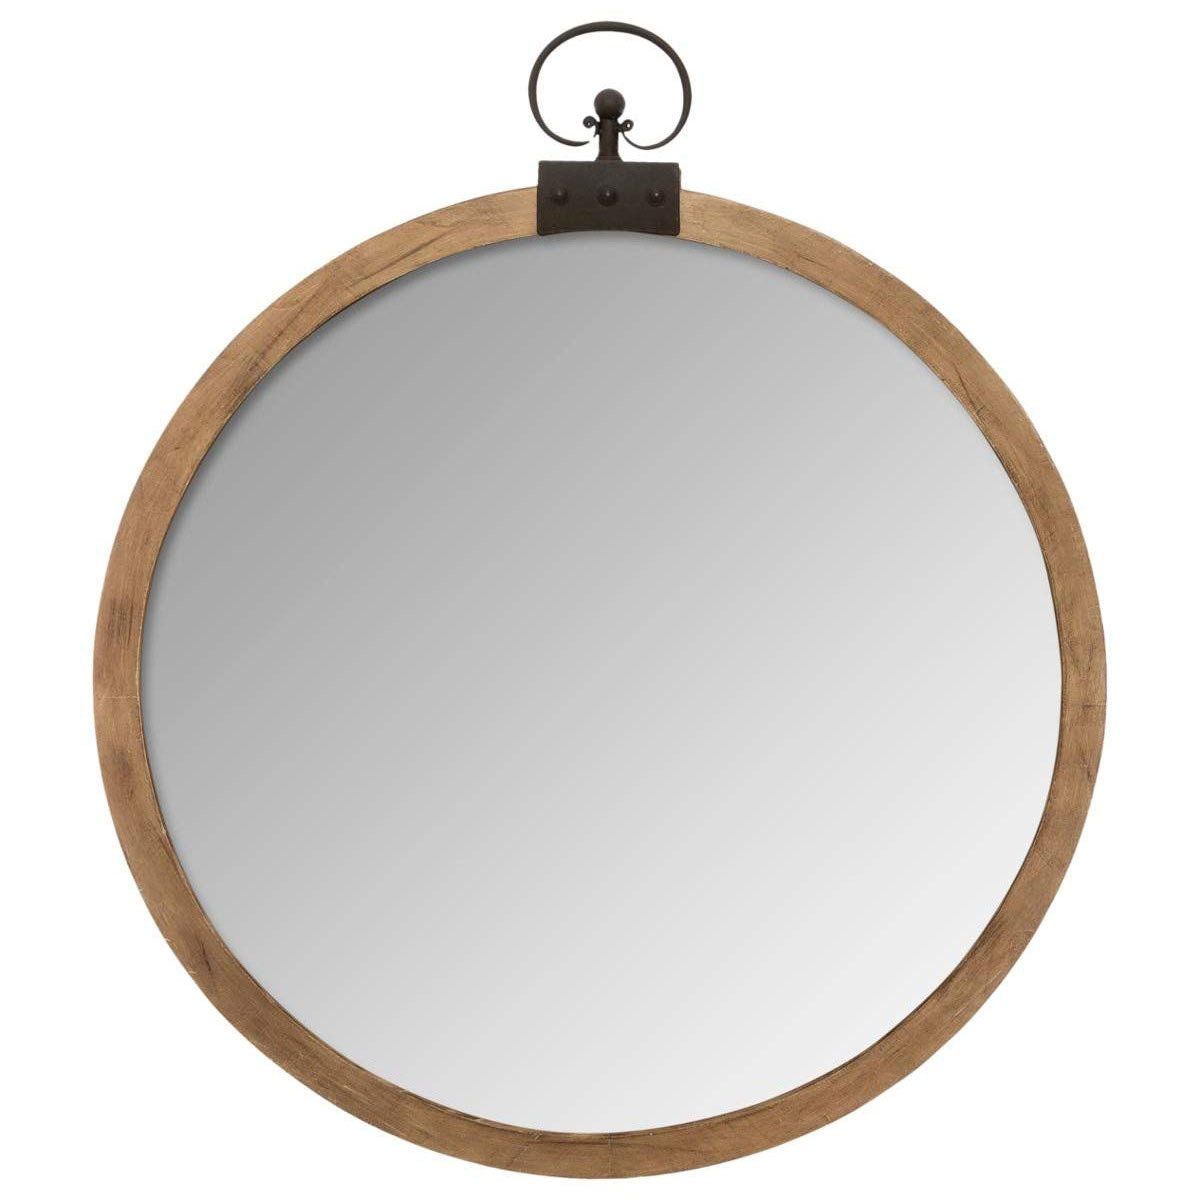 Atmosphera Ozdobné zrcadlo s dřevěným rámem, průměr 74 cm - EMAKO.CZ s.r.o.